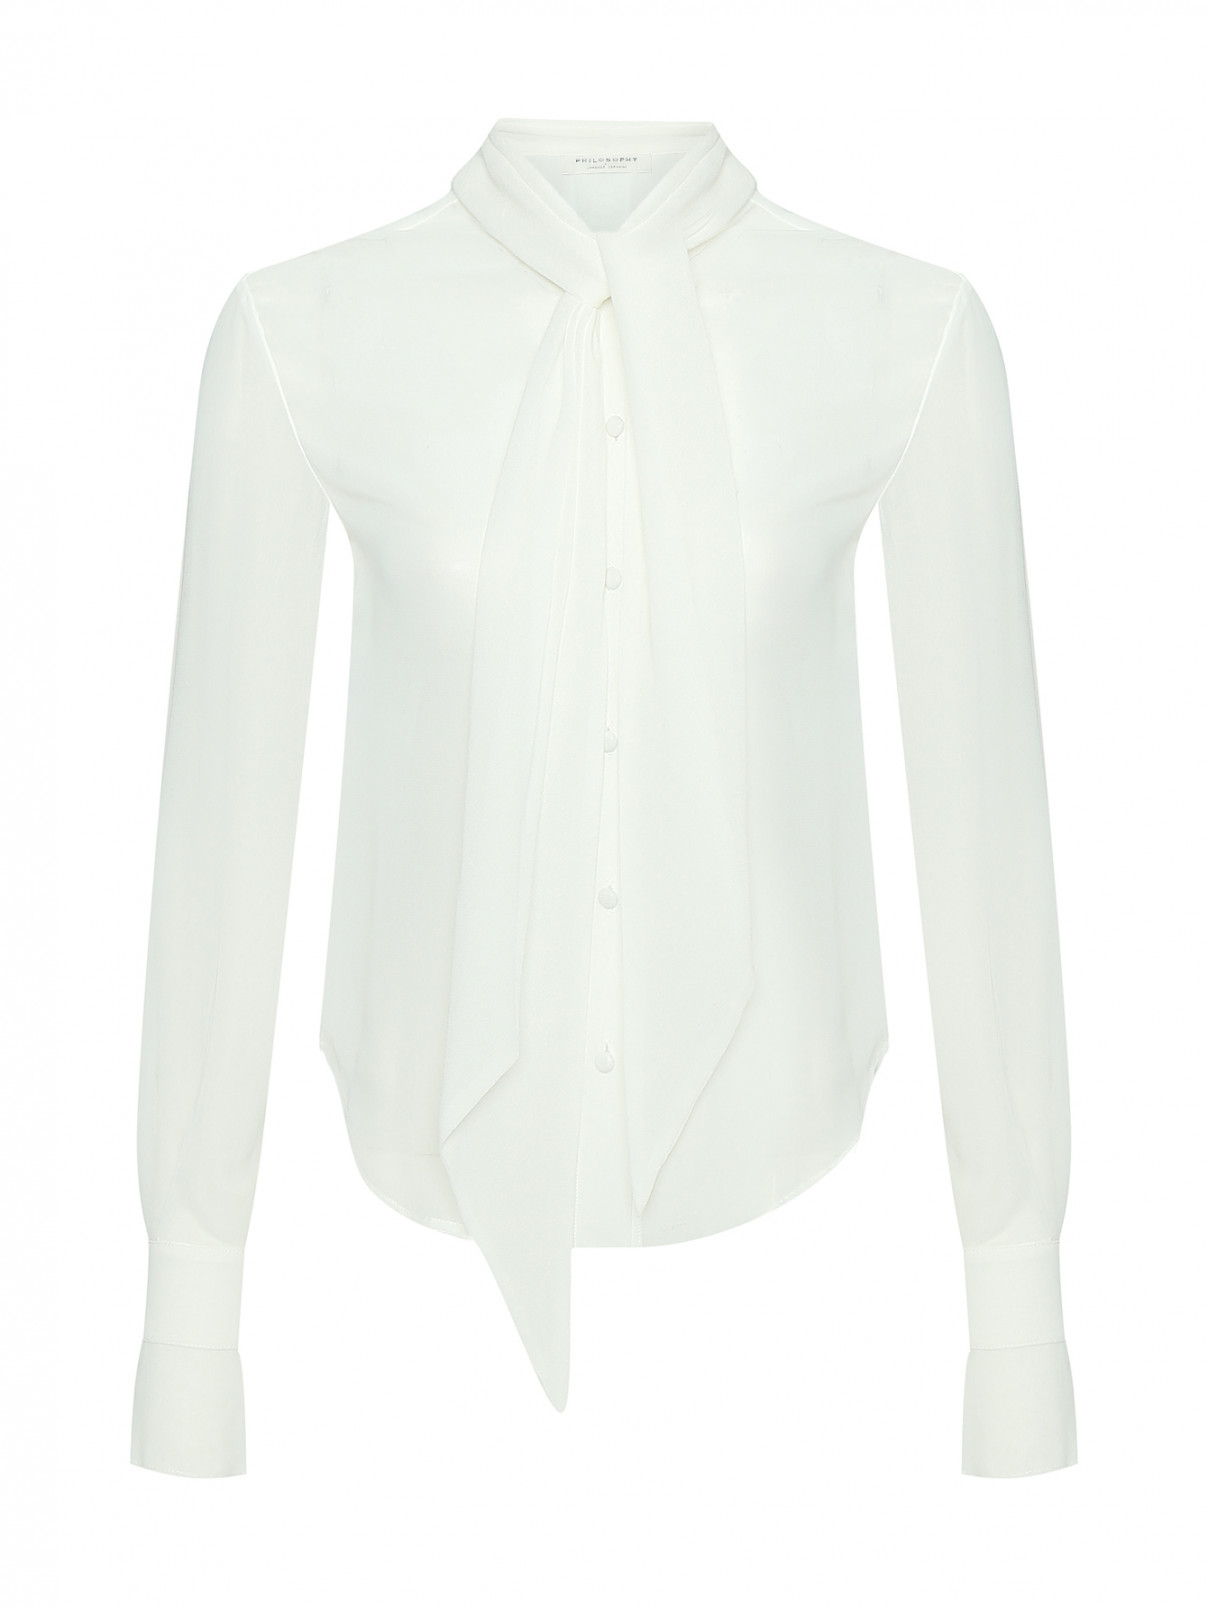 Полупрозрачная блуза из вискозы Philosophy di Lorenzo Serafini  –  Общий вид  – Цвет:  Белый